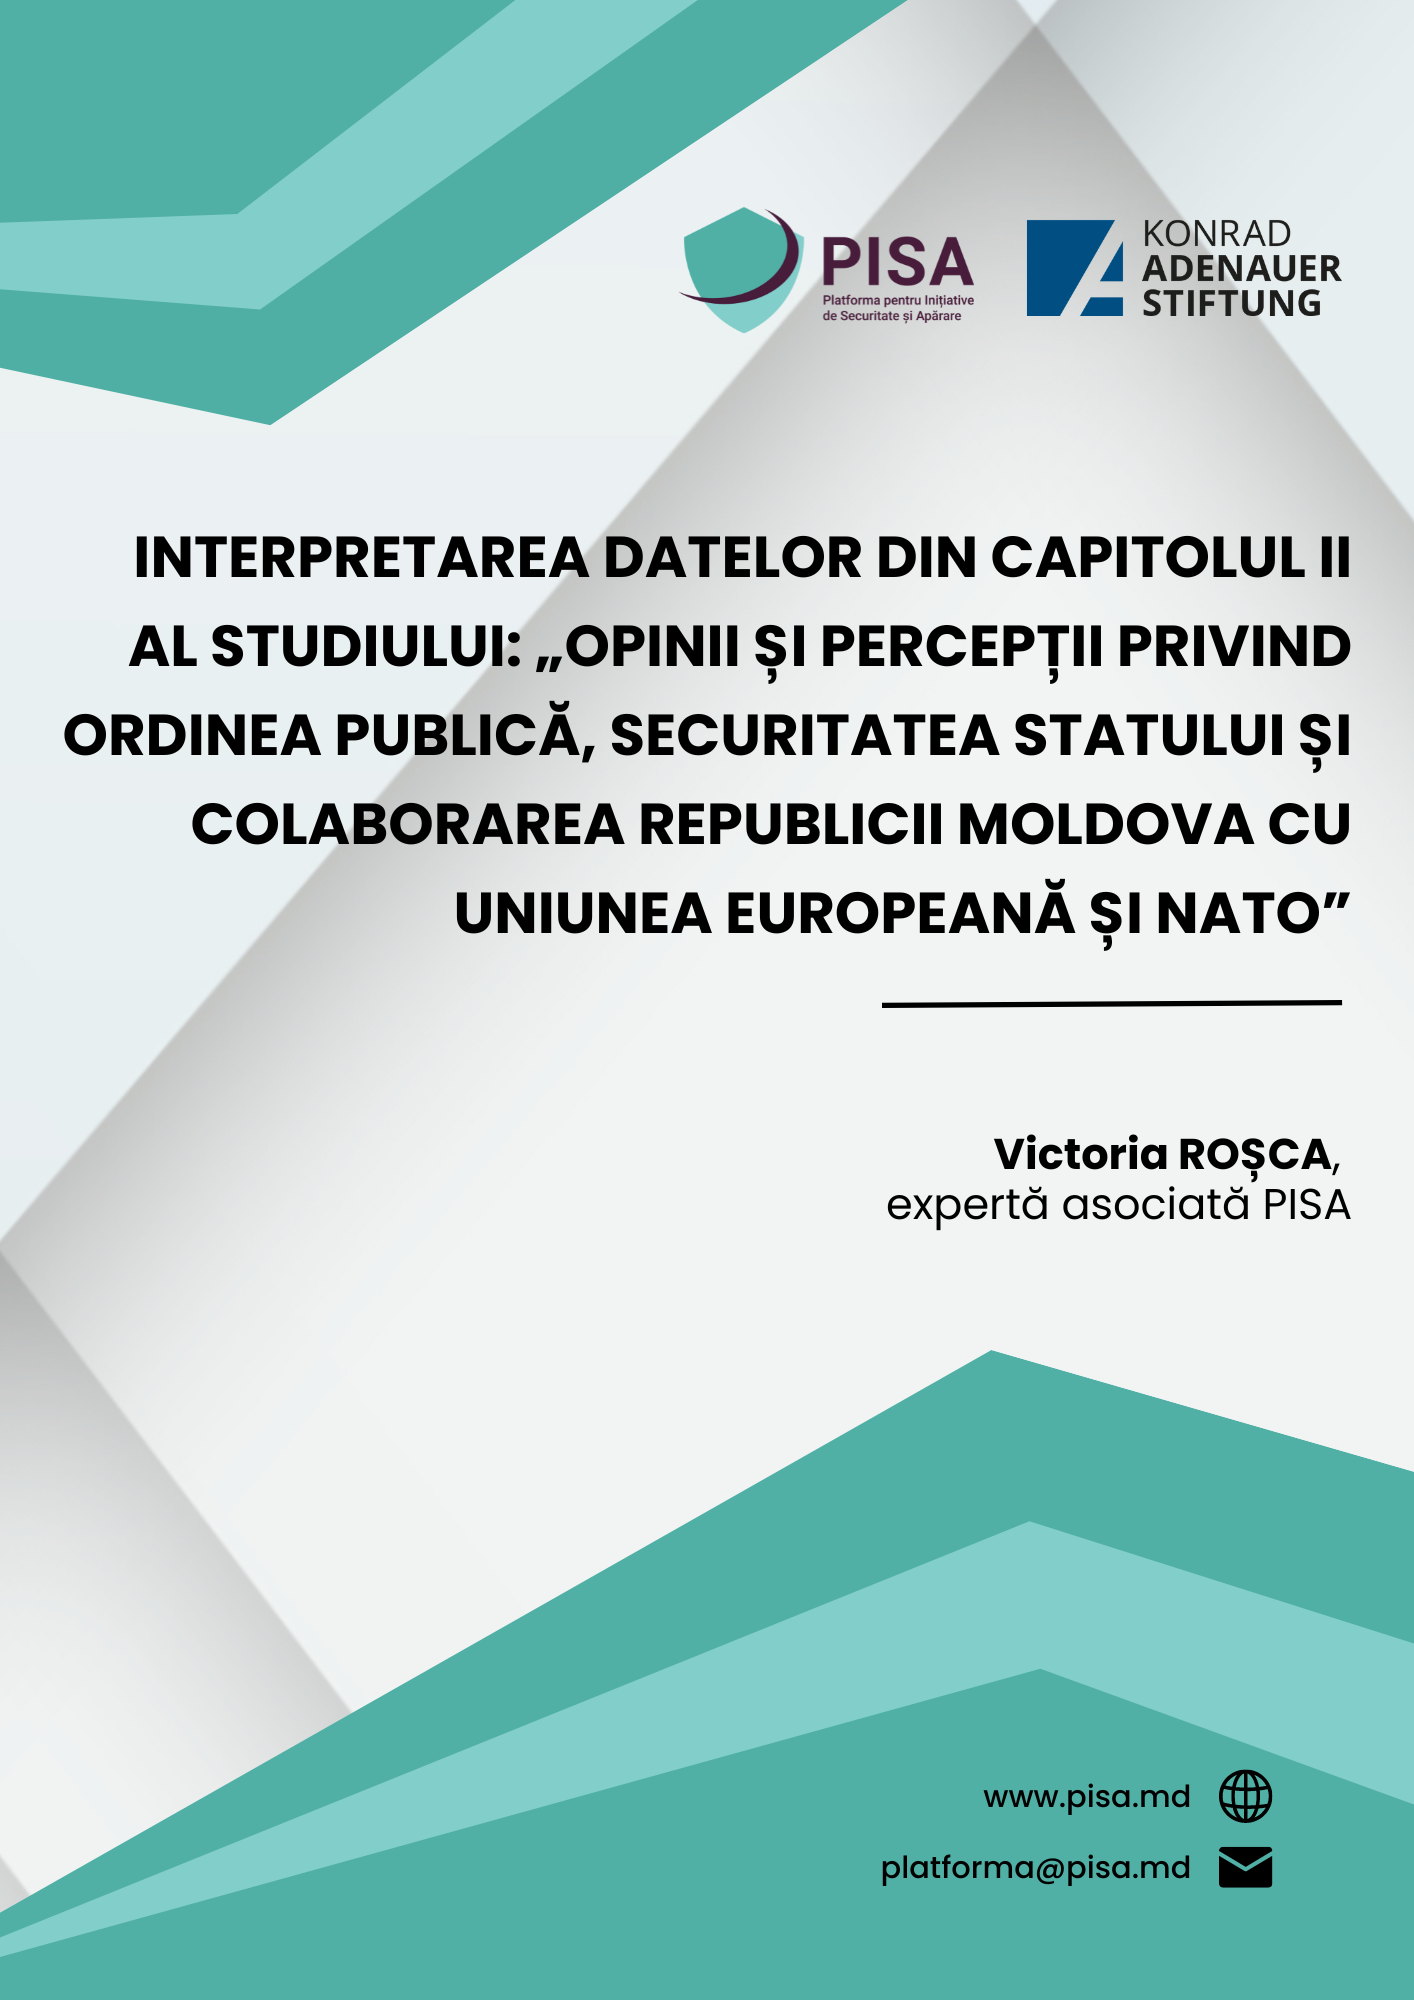 Interpretarea datelor din capitolul II al Studiului: ”Opinii și percepții privind ordinea publică, securitatea statului și colaborarea Republicii Moldova cu Uniunea Europeană și NATO”